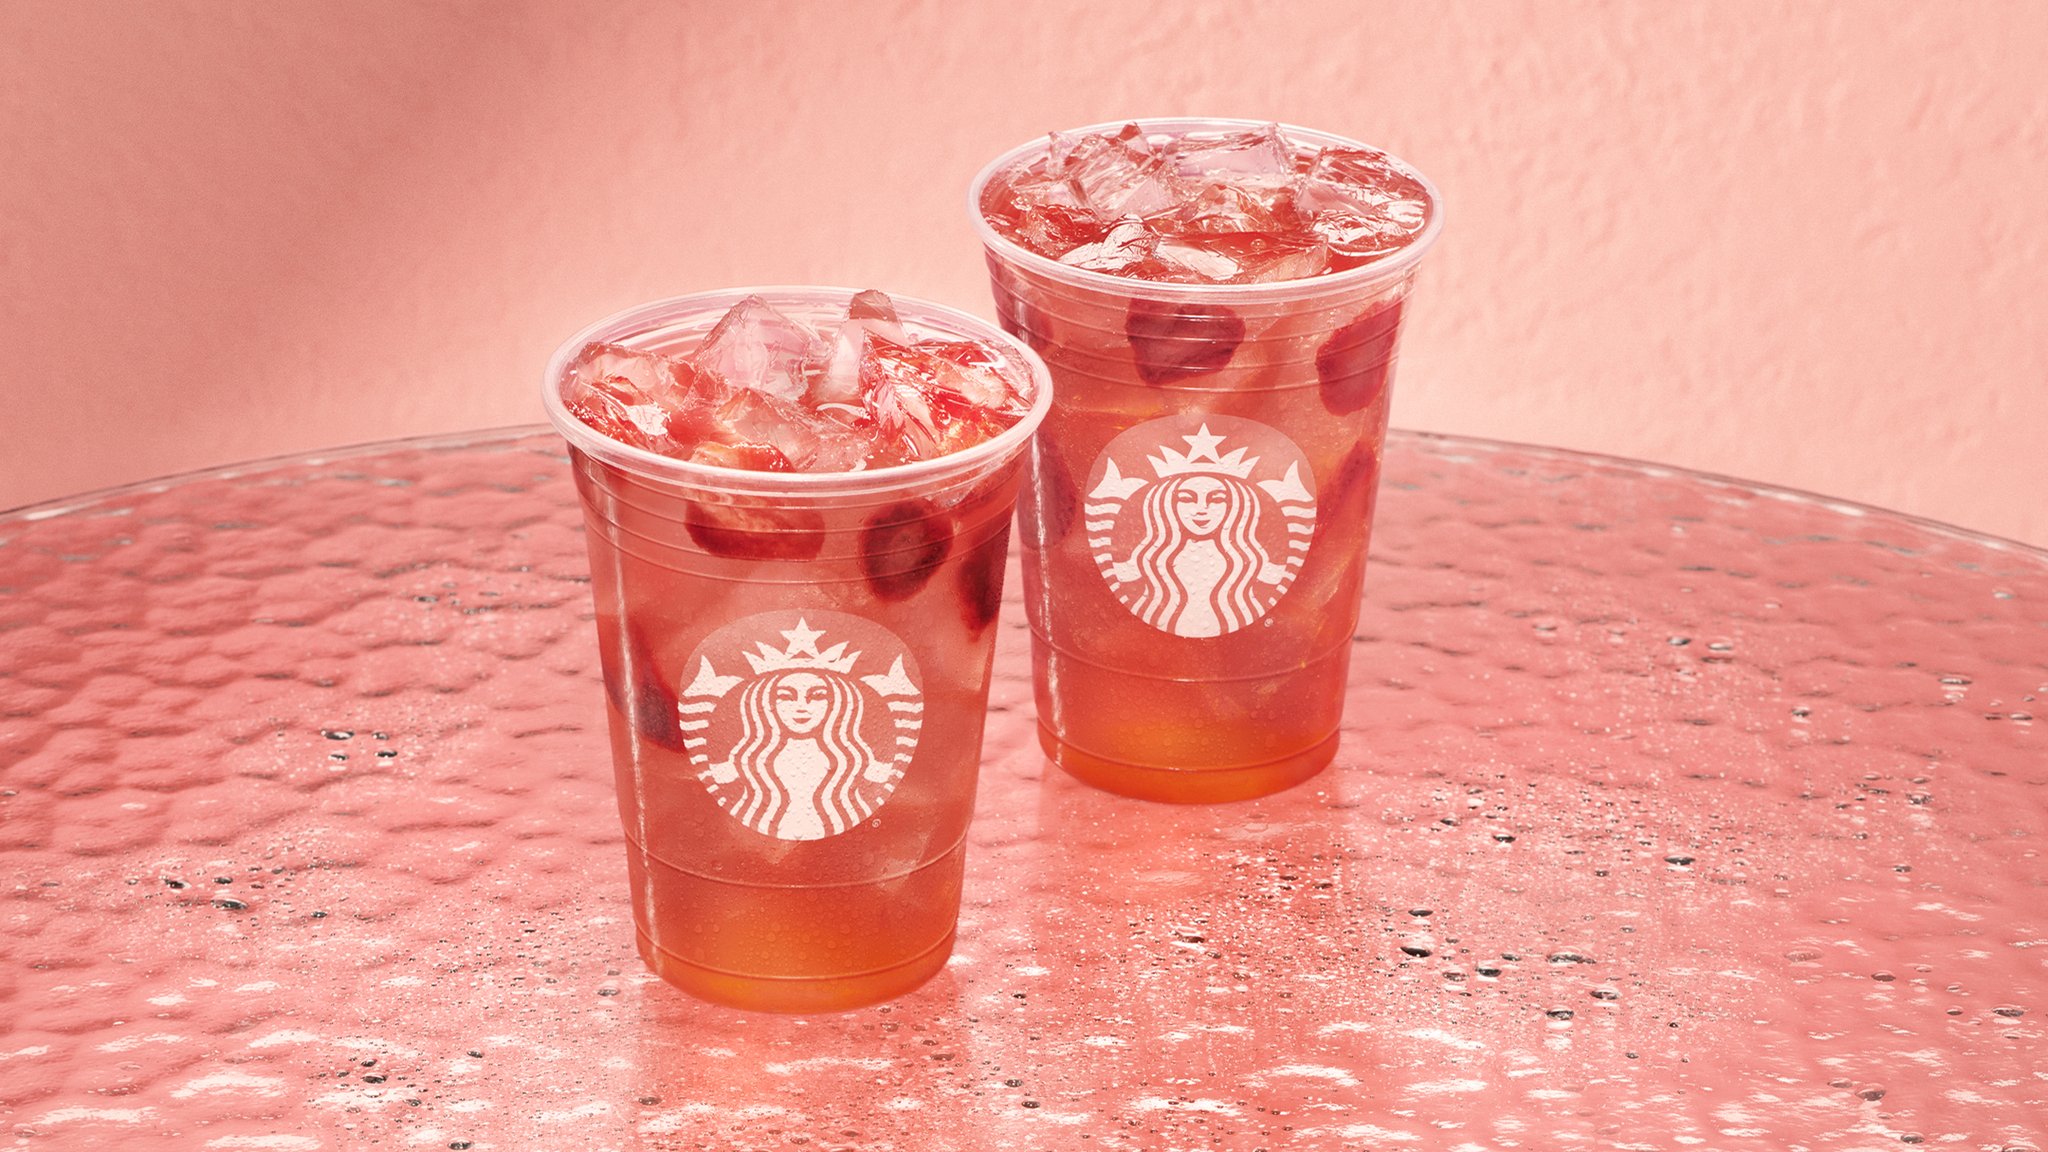 Starbucks Strawberry Acai Refresher/Lemonade